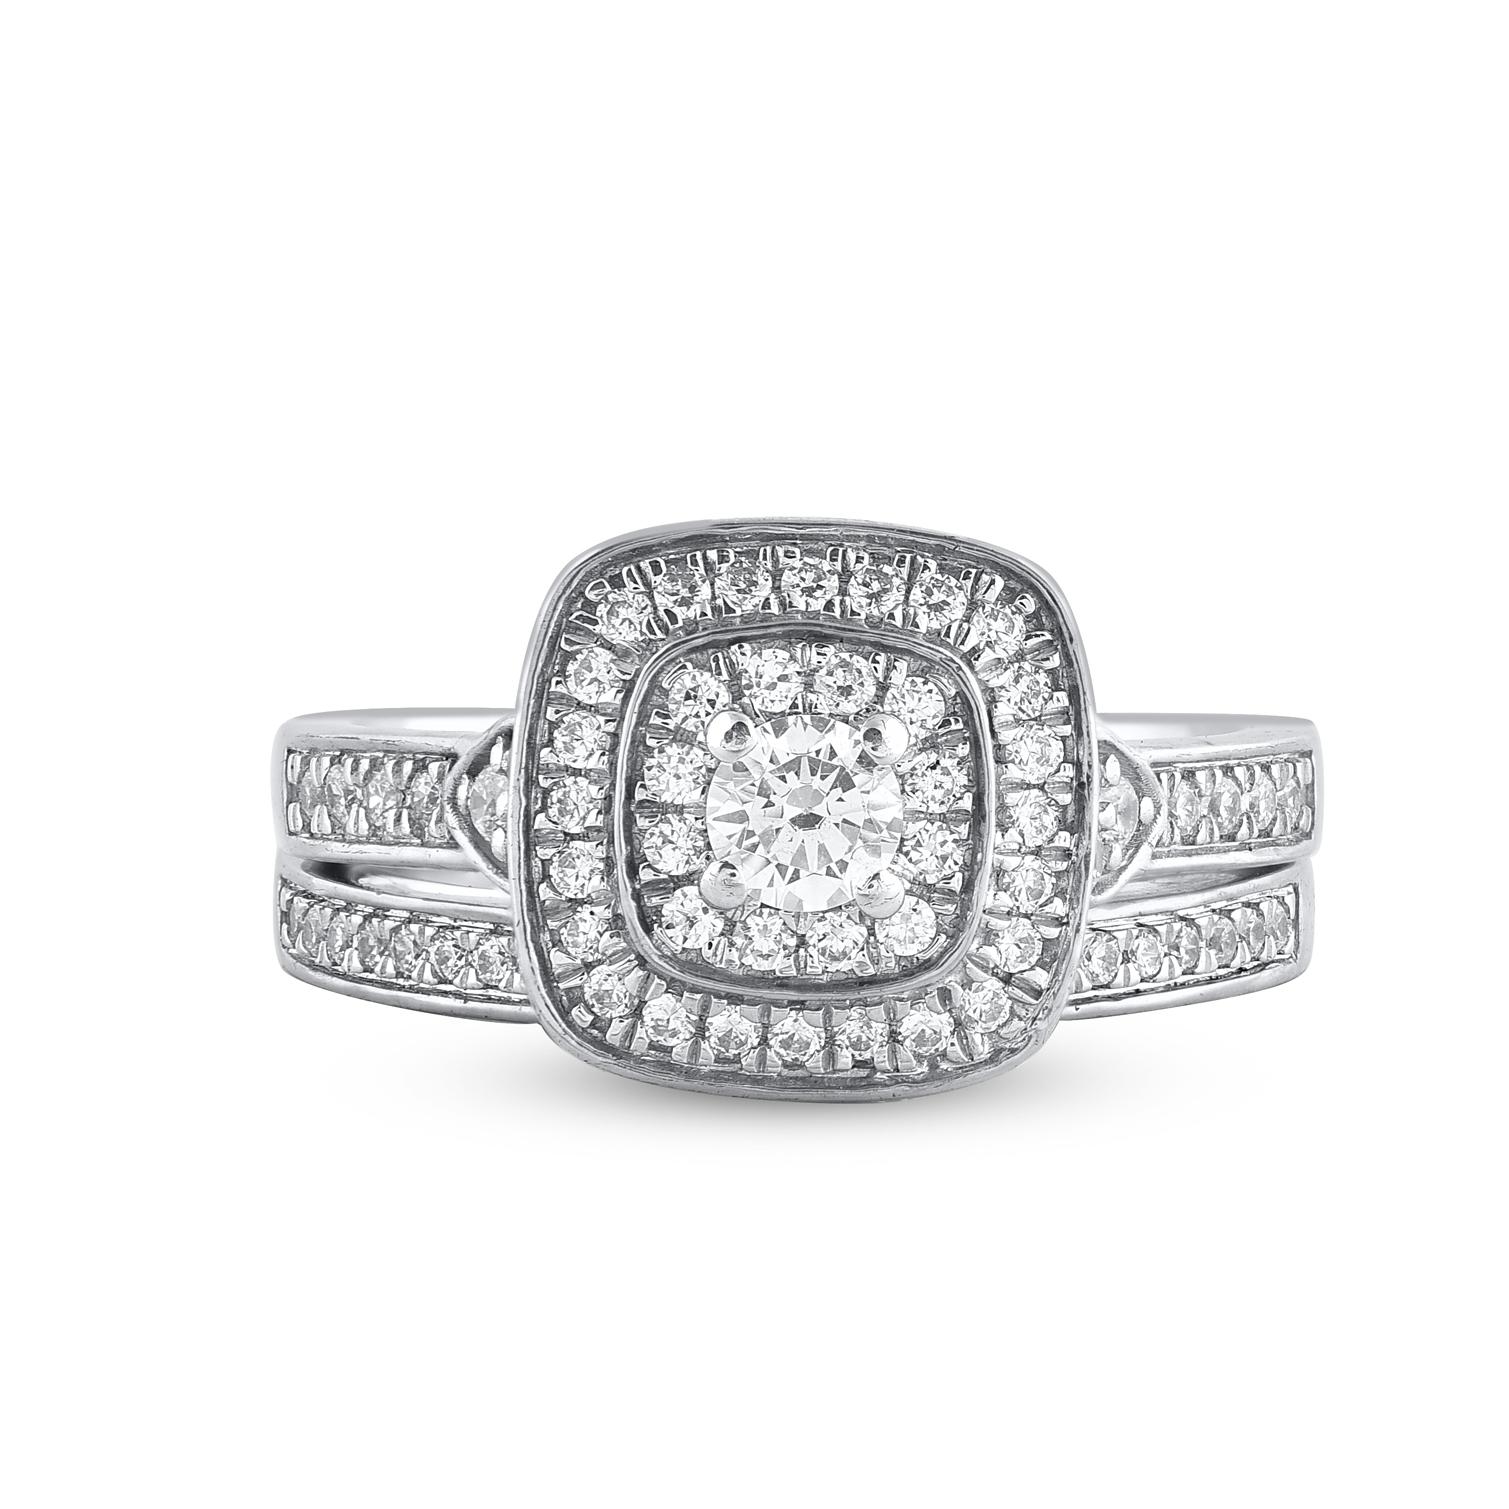 Bringen Sie Ihre Liebe mit diesem klassischen und traditionellen Diamant-Braut-Set zum Ausdruck. Gefertigt aus 14 Karat Weißgold. In diesem Ehering funkeln 74 Diamanten im Brillantschliff und runde Diamanten im Einzelschliff in wunderschöner